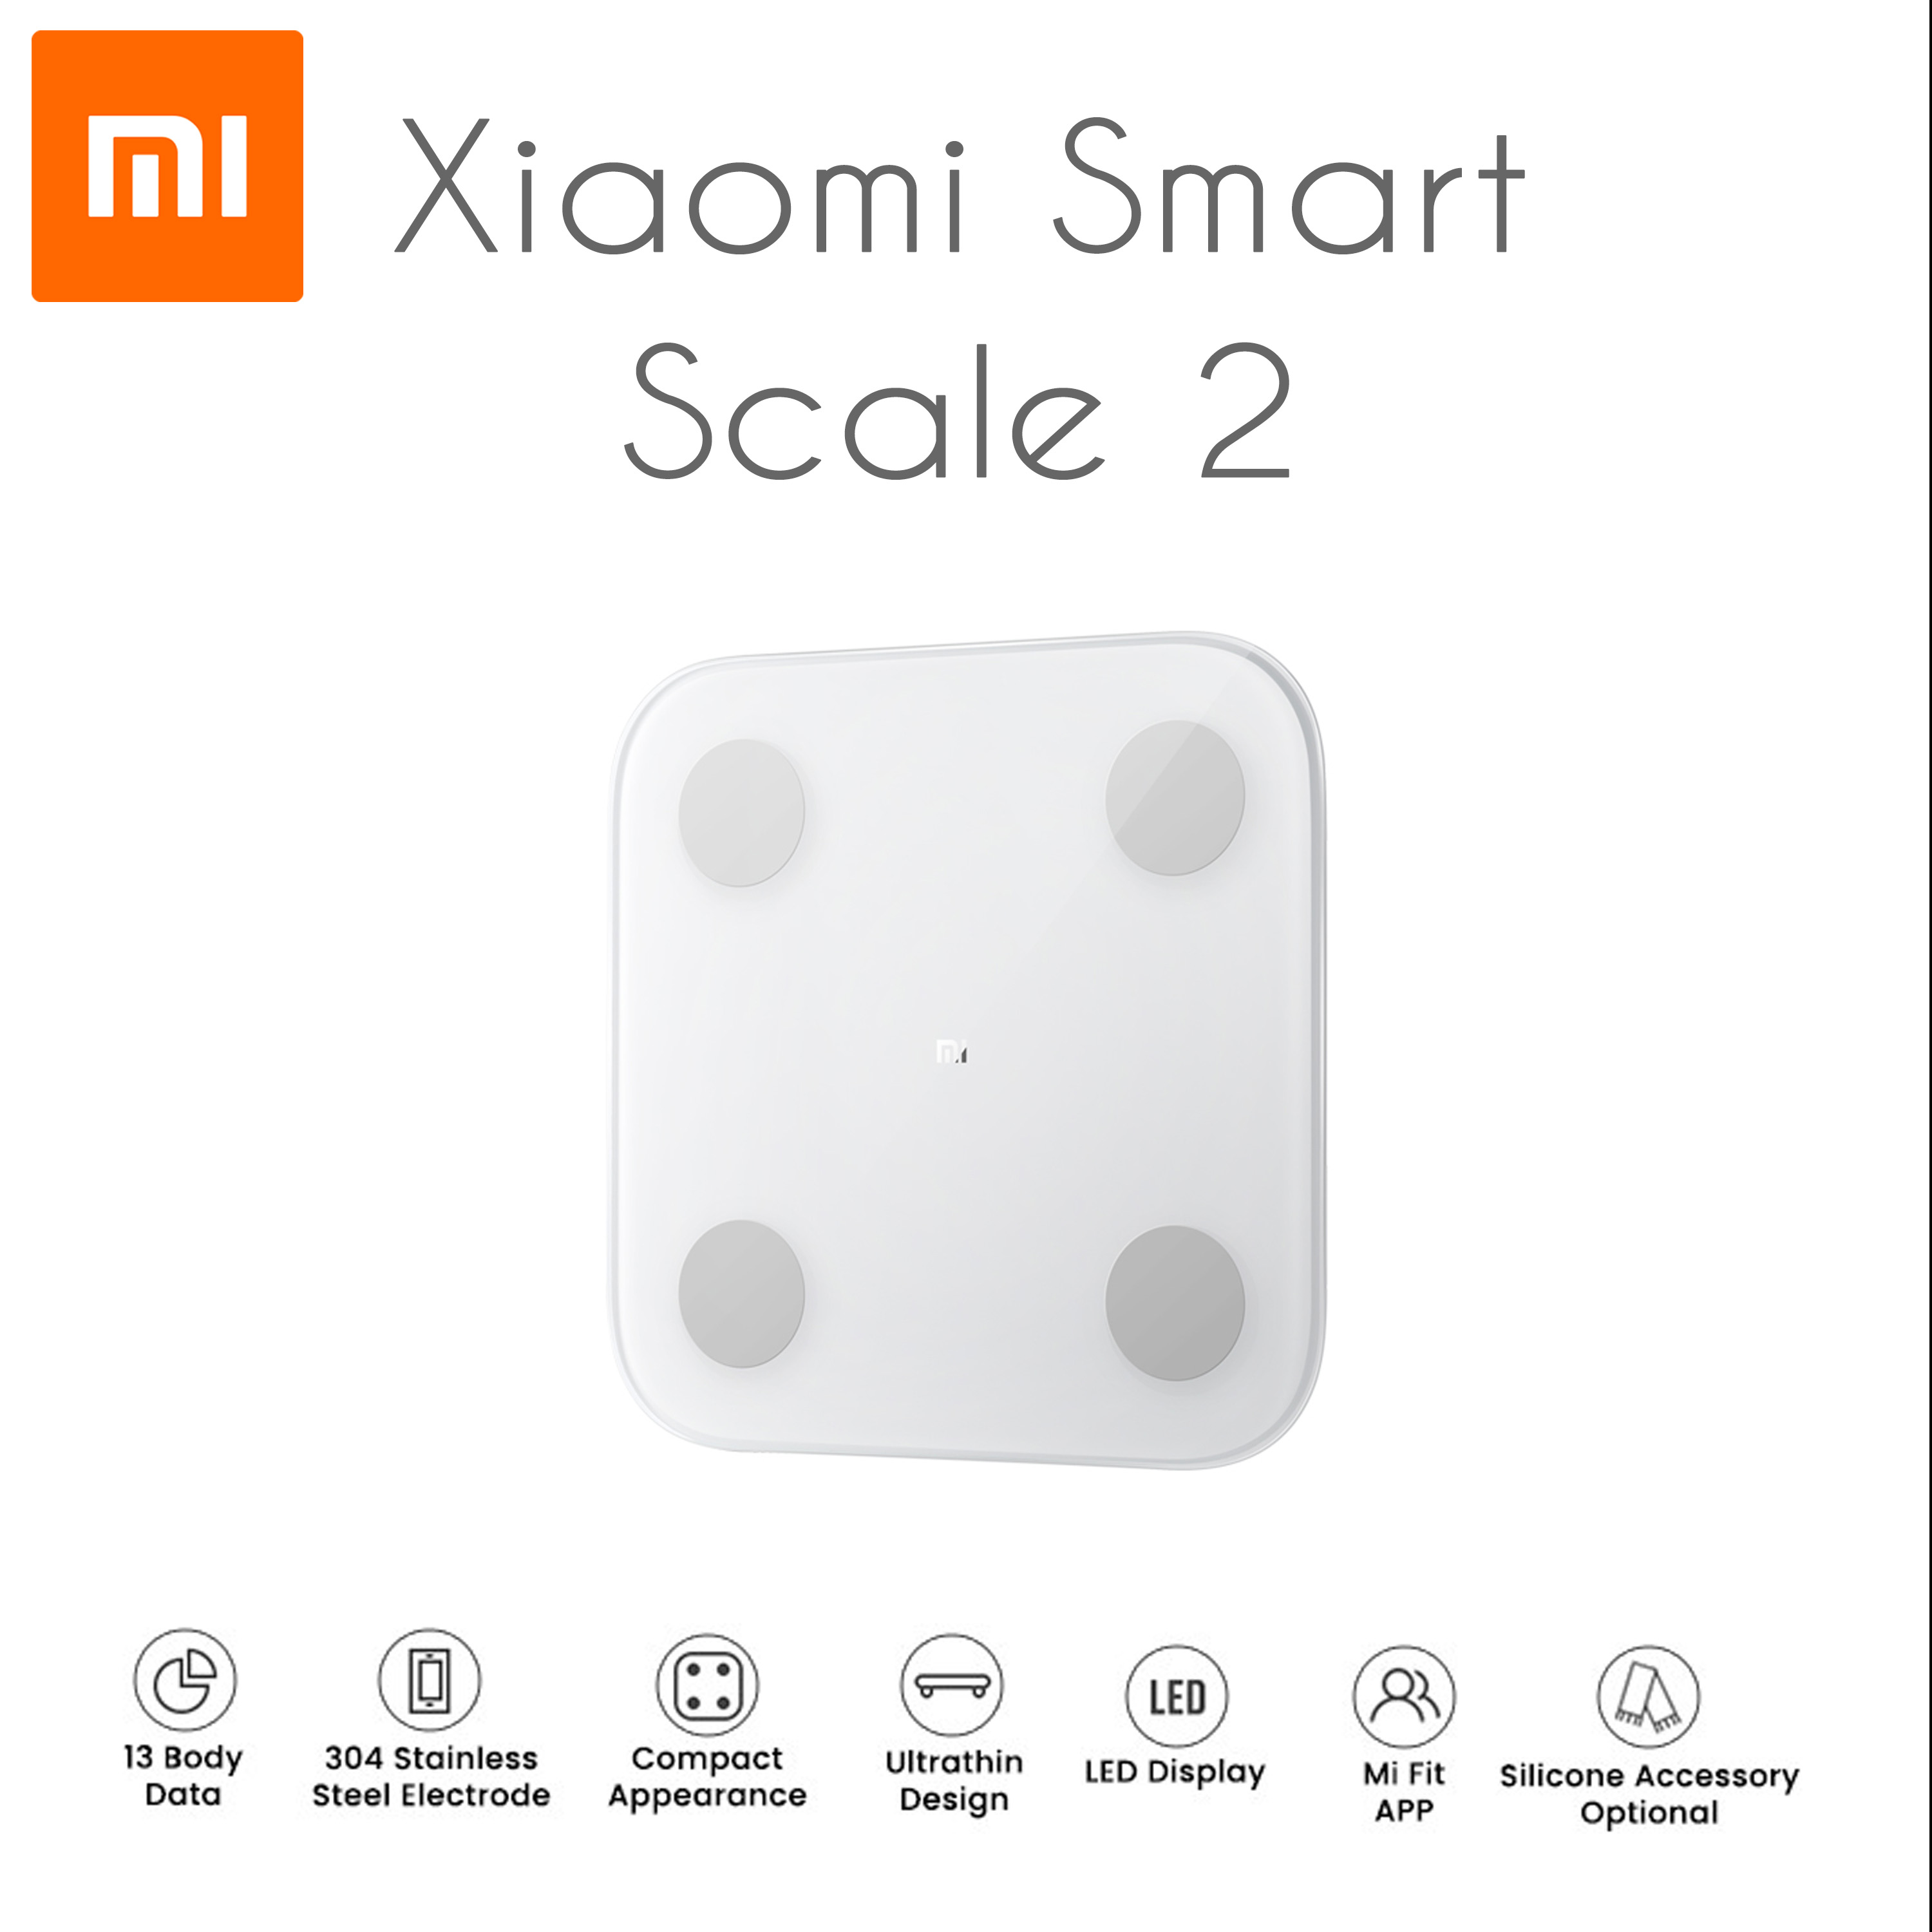 Xiaomi mi body Composition Scale 2. Mi Smart body fat Scale 2 комплект. Xiaomi mi body Composition Scale 2 приложение. Mi Smart body Composition Scale 2 комплект. Body composition scale 2 приложение для весов